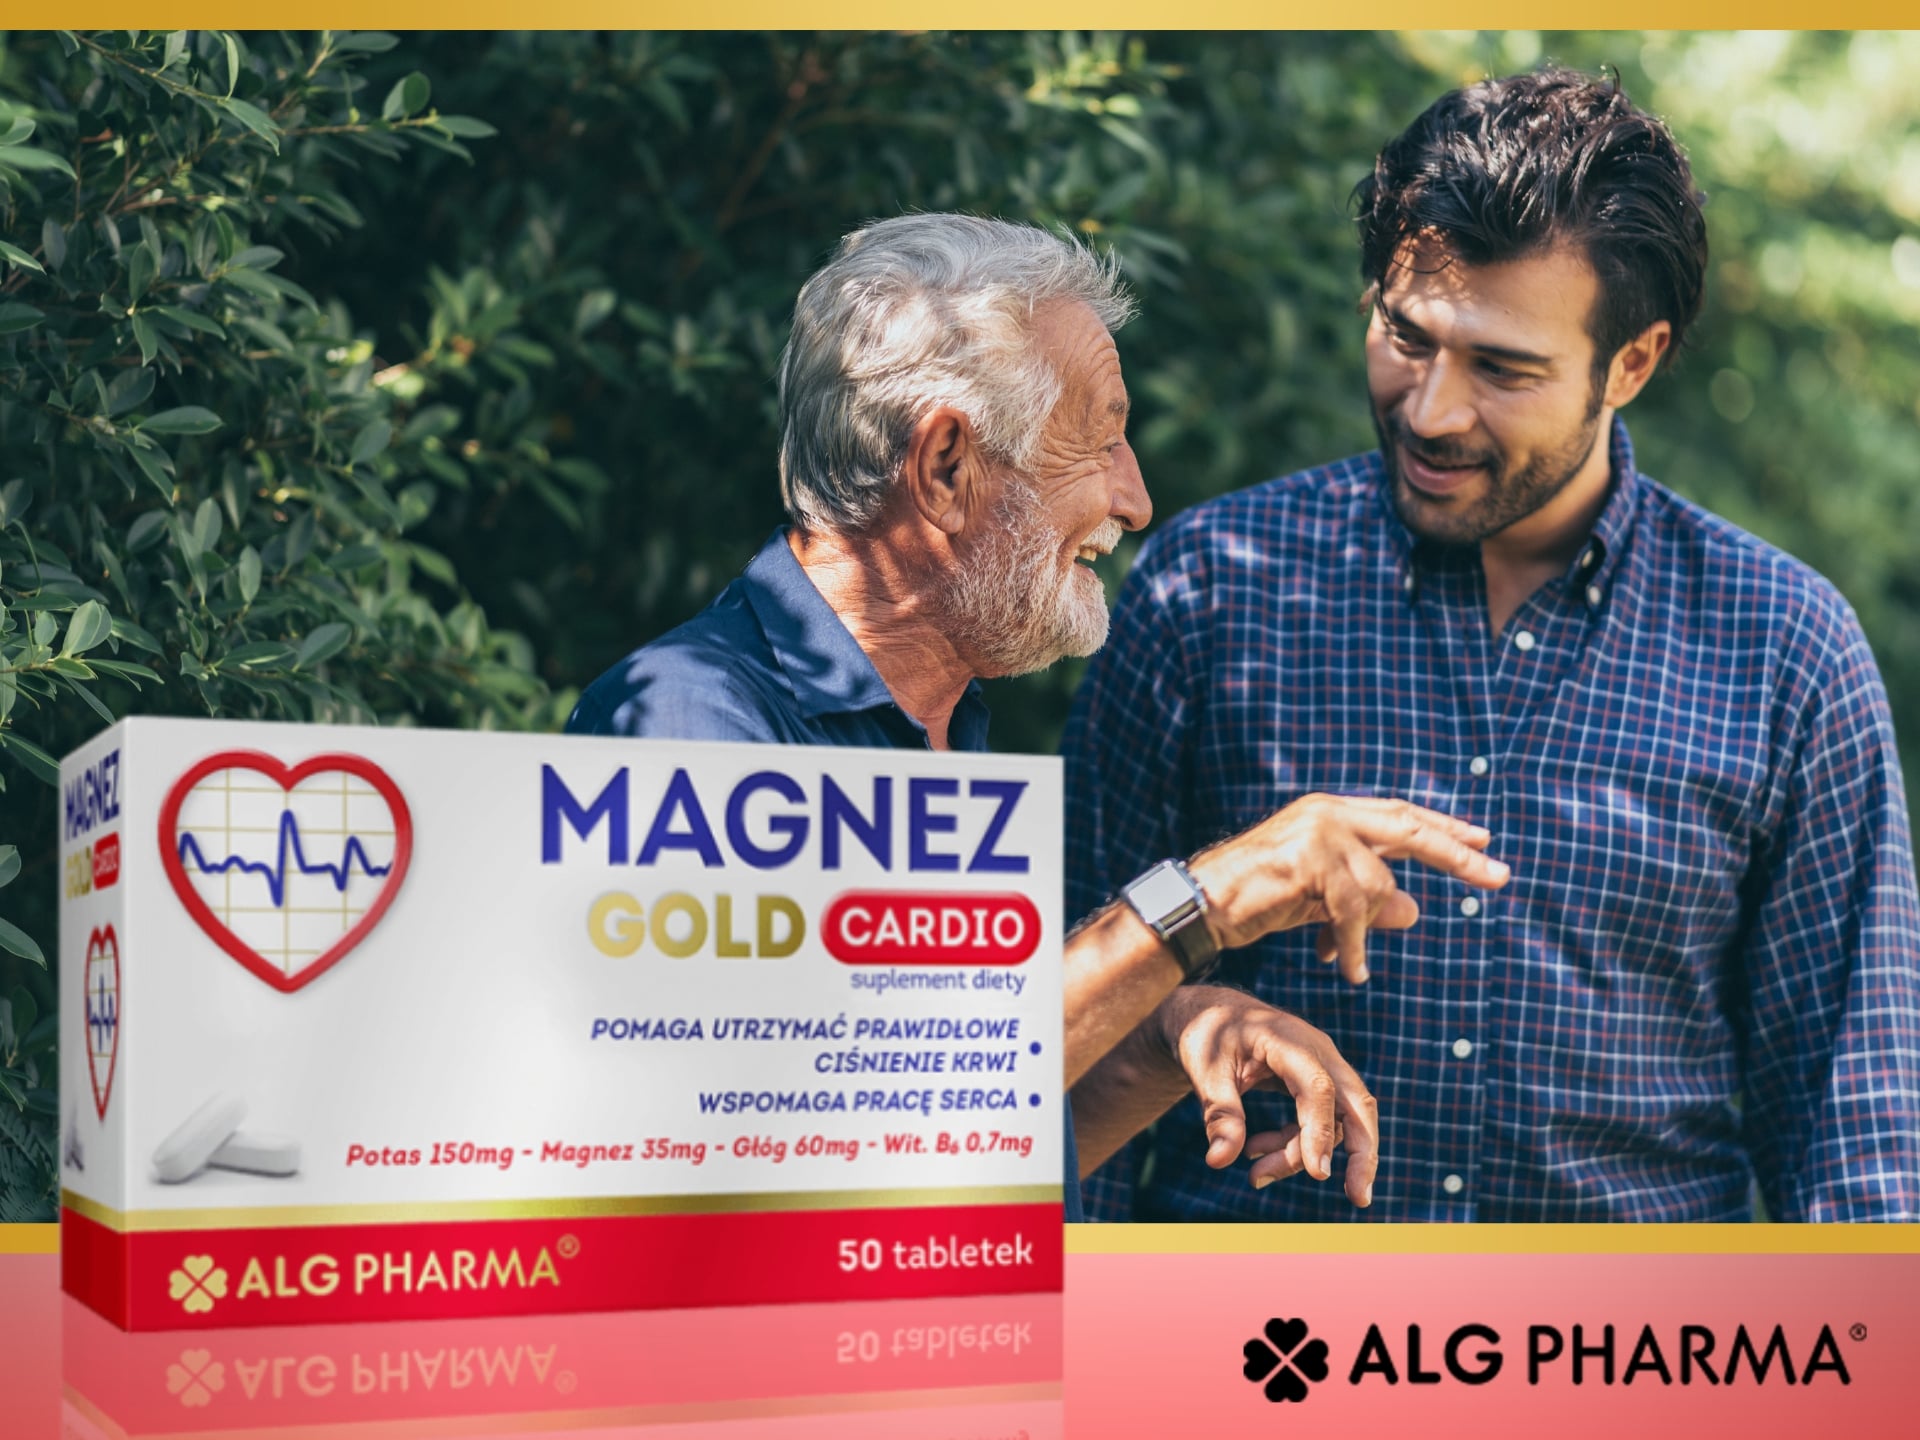 ALG Pharma - Magnez na zdrowe serce